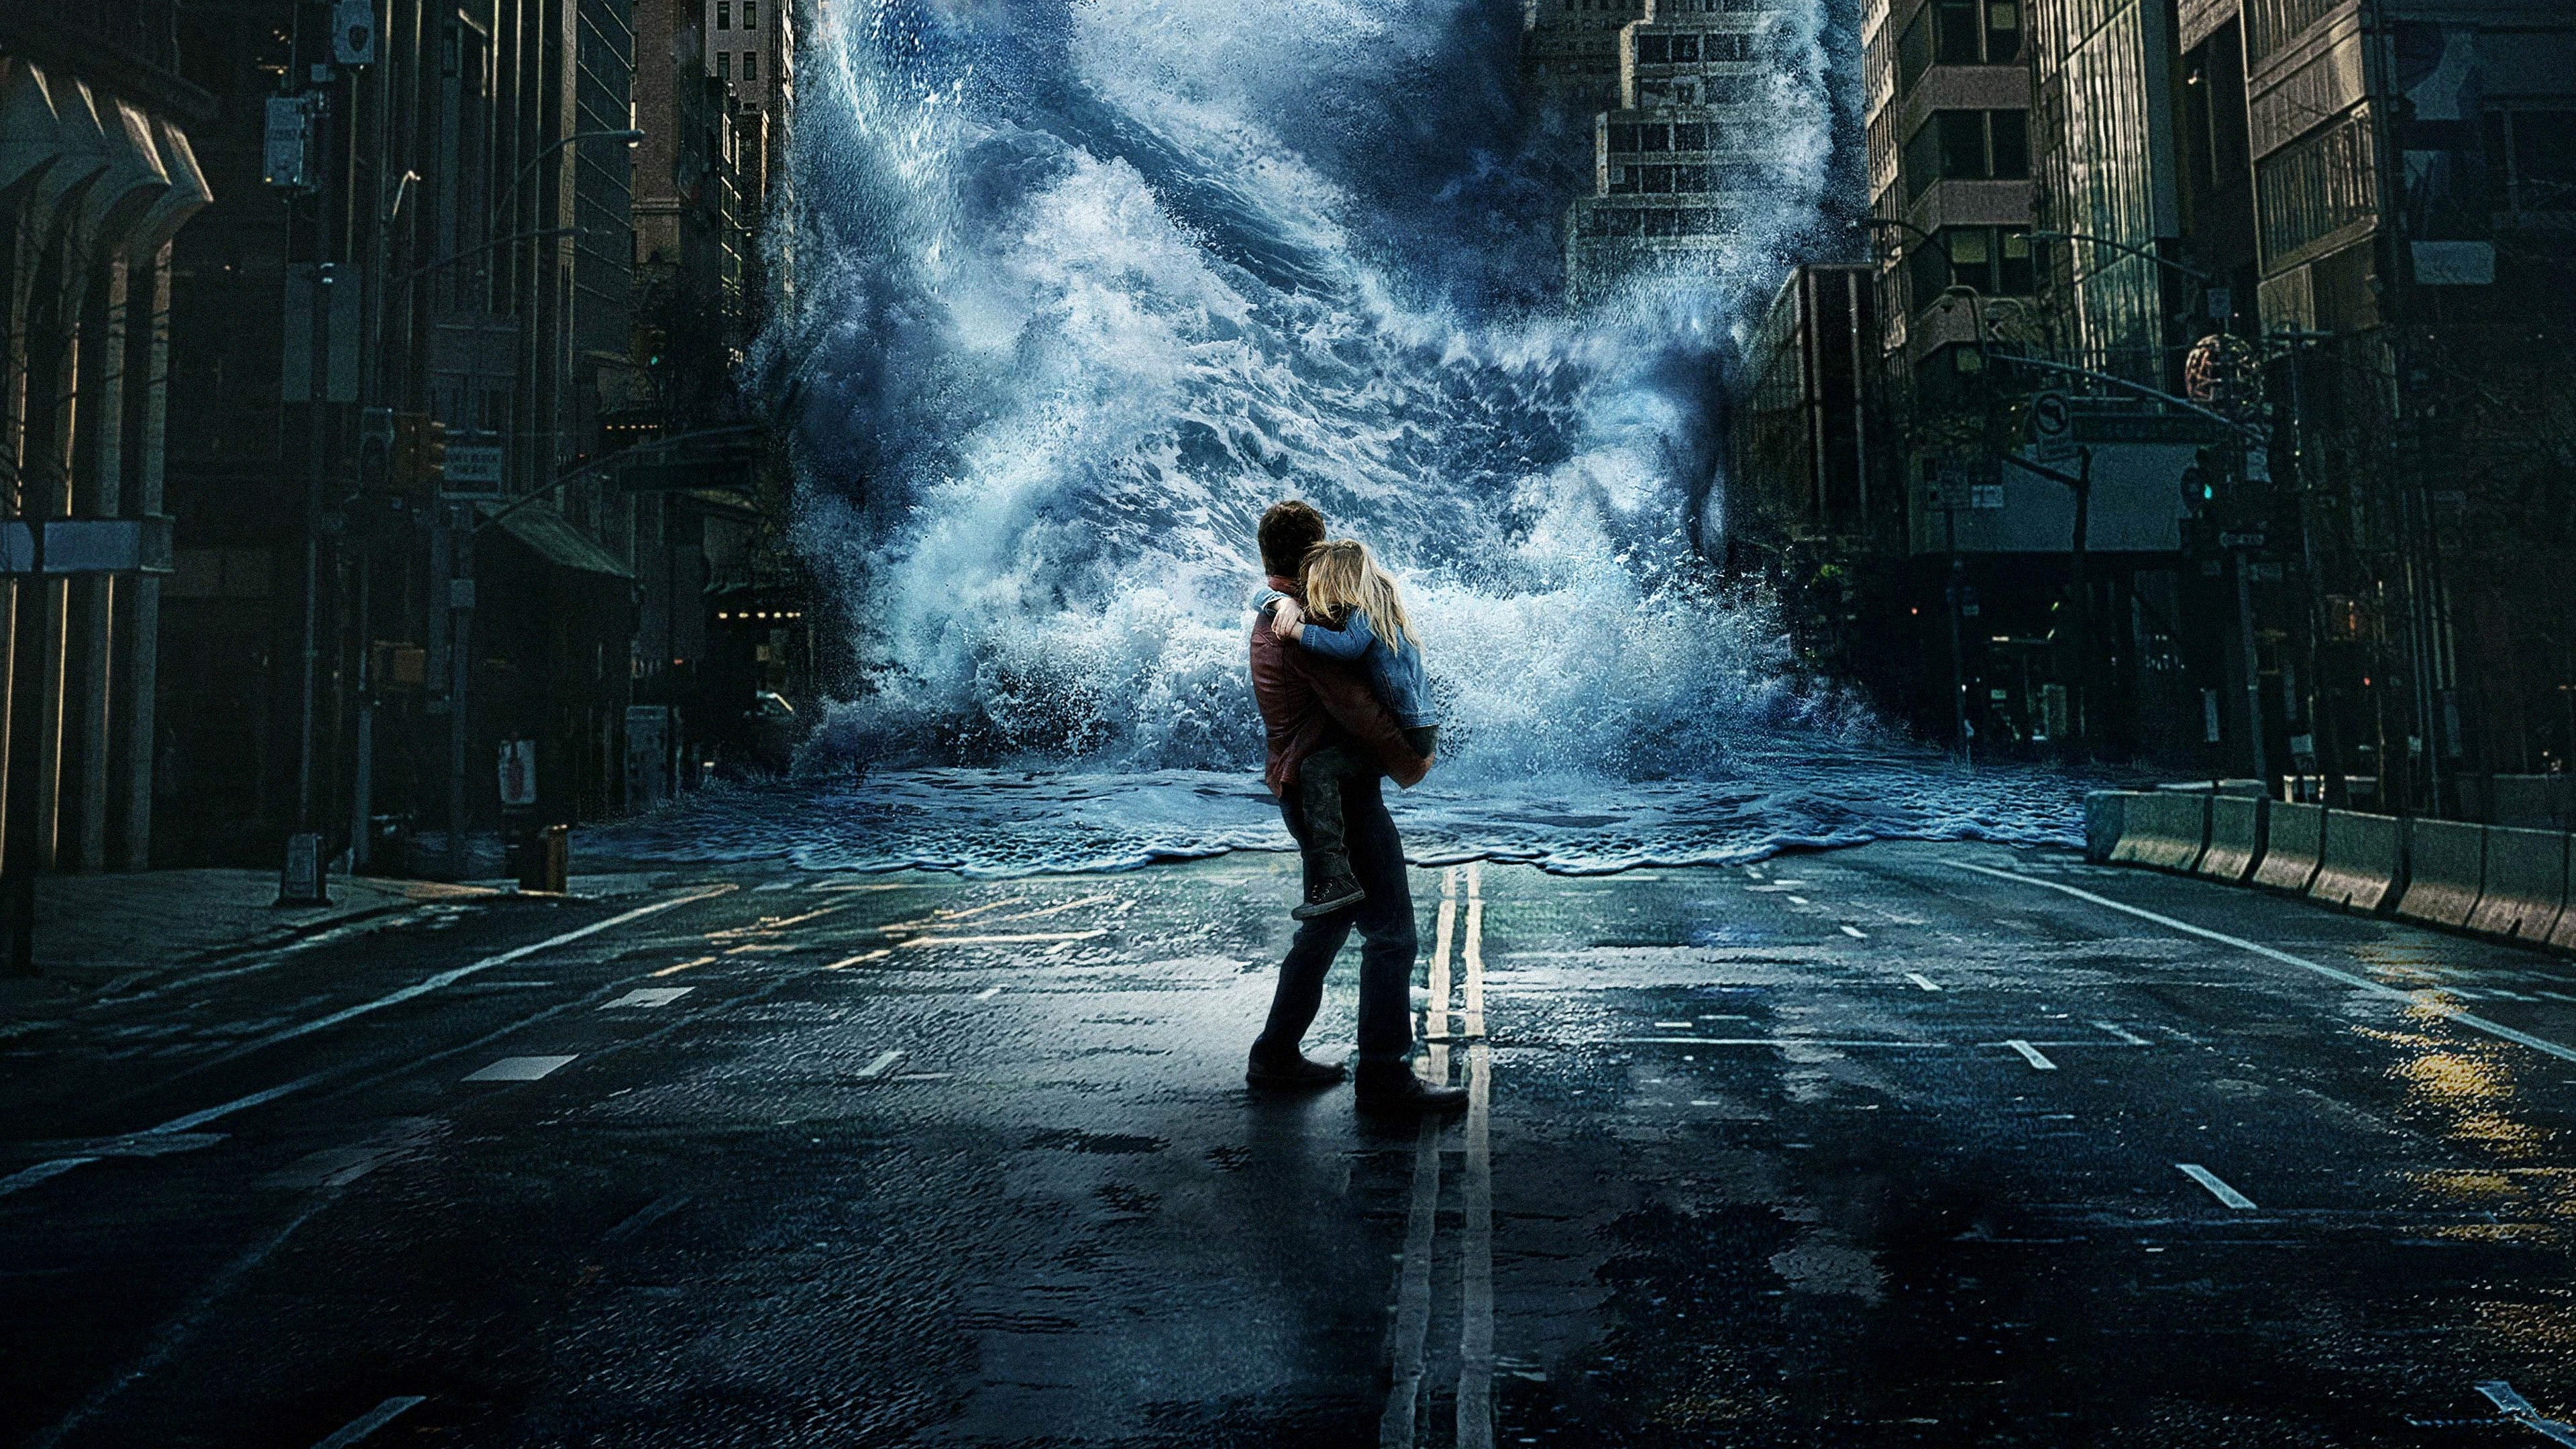 Poster Phim Siêu Bão Địa Cầu (Geostorm)